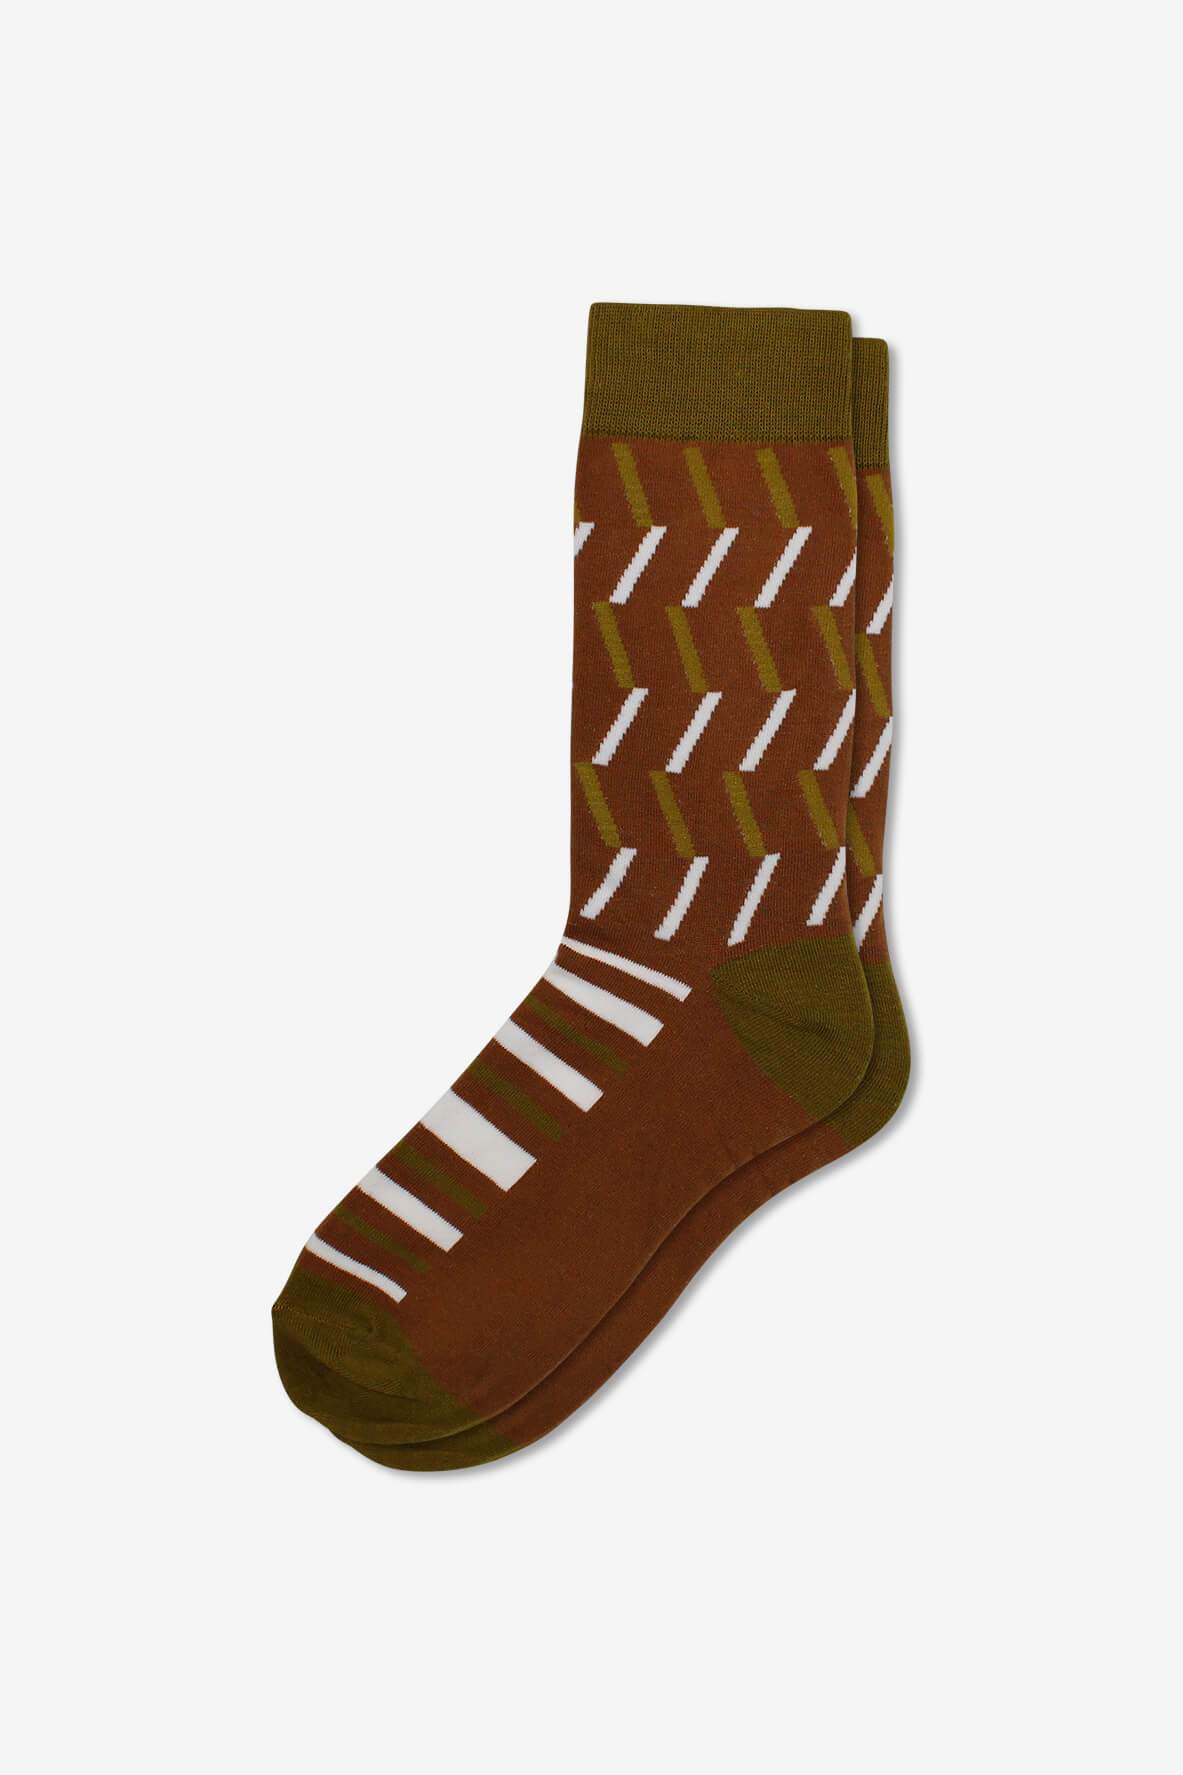 Socks IMG_5373, socks, GoTie